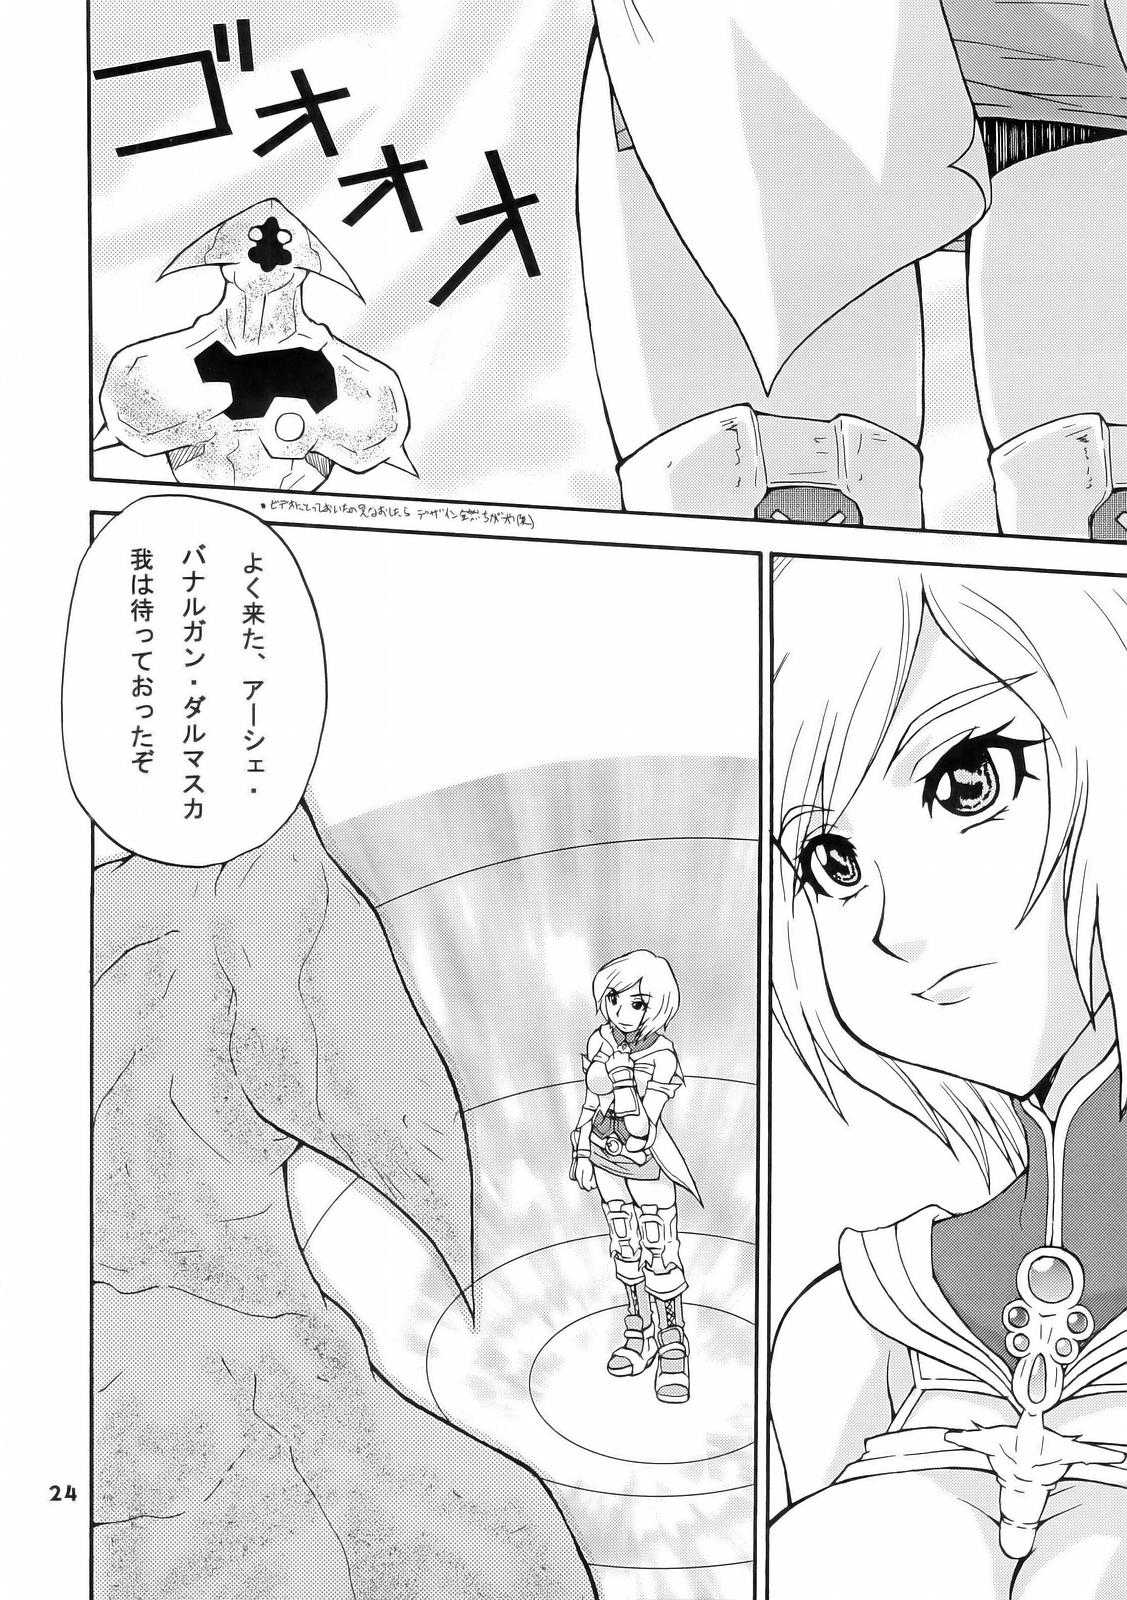 [Mangana] Hh (Final Fantasy 12) 